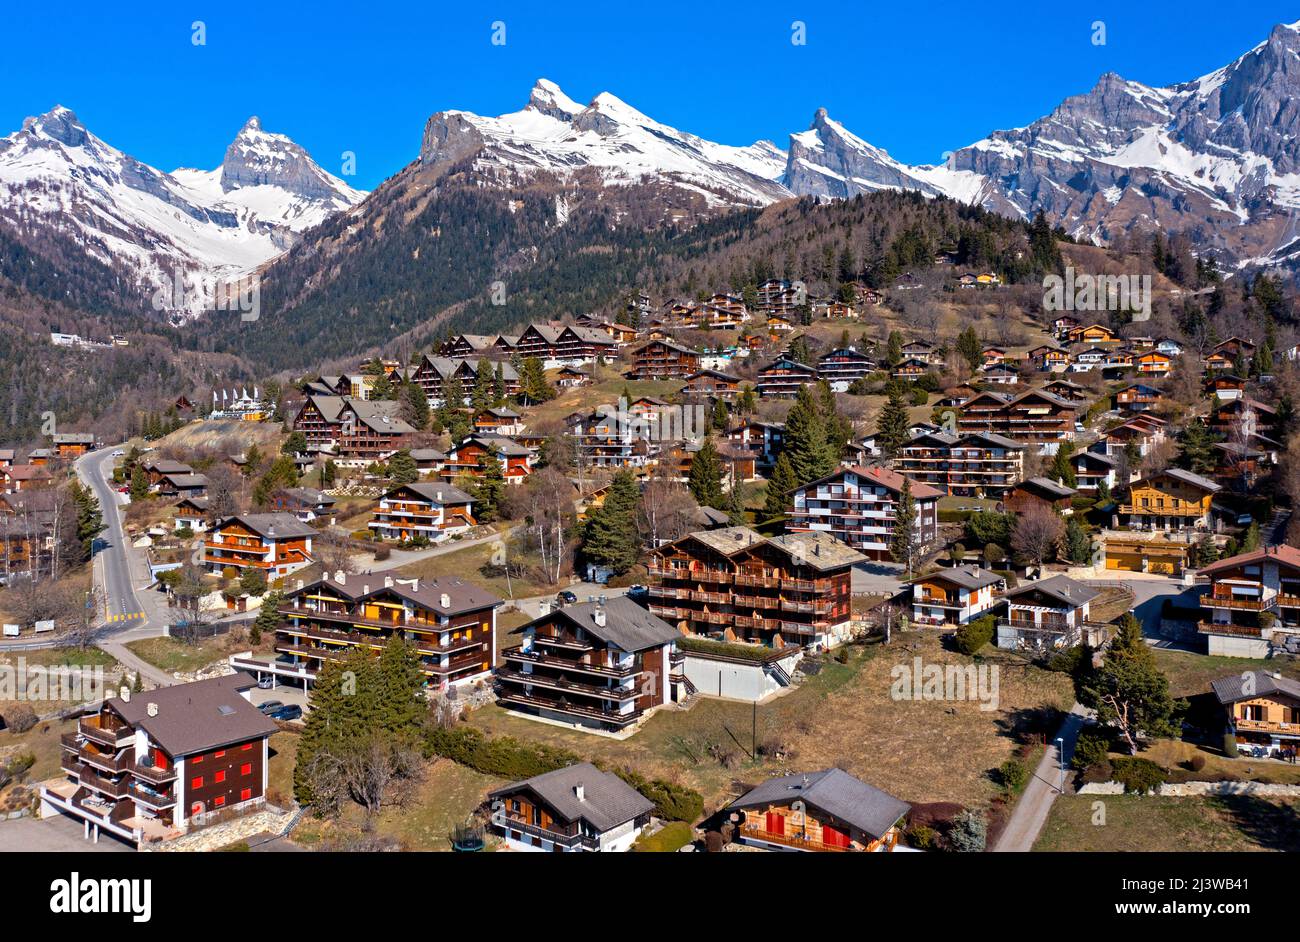 Holiday and Health Resort Ovronnaz ai piedi delle vette innevate delle Alpi, Ovronnaz, Vallese, Svizzera Foto Stock